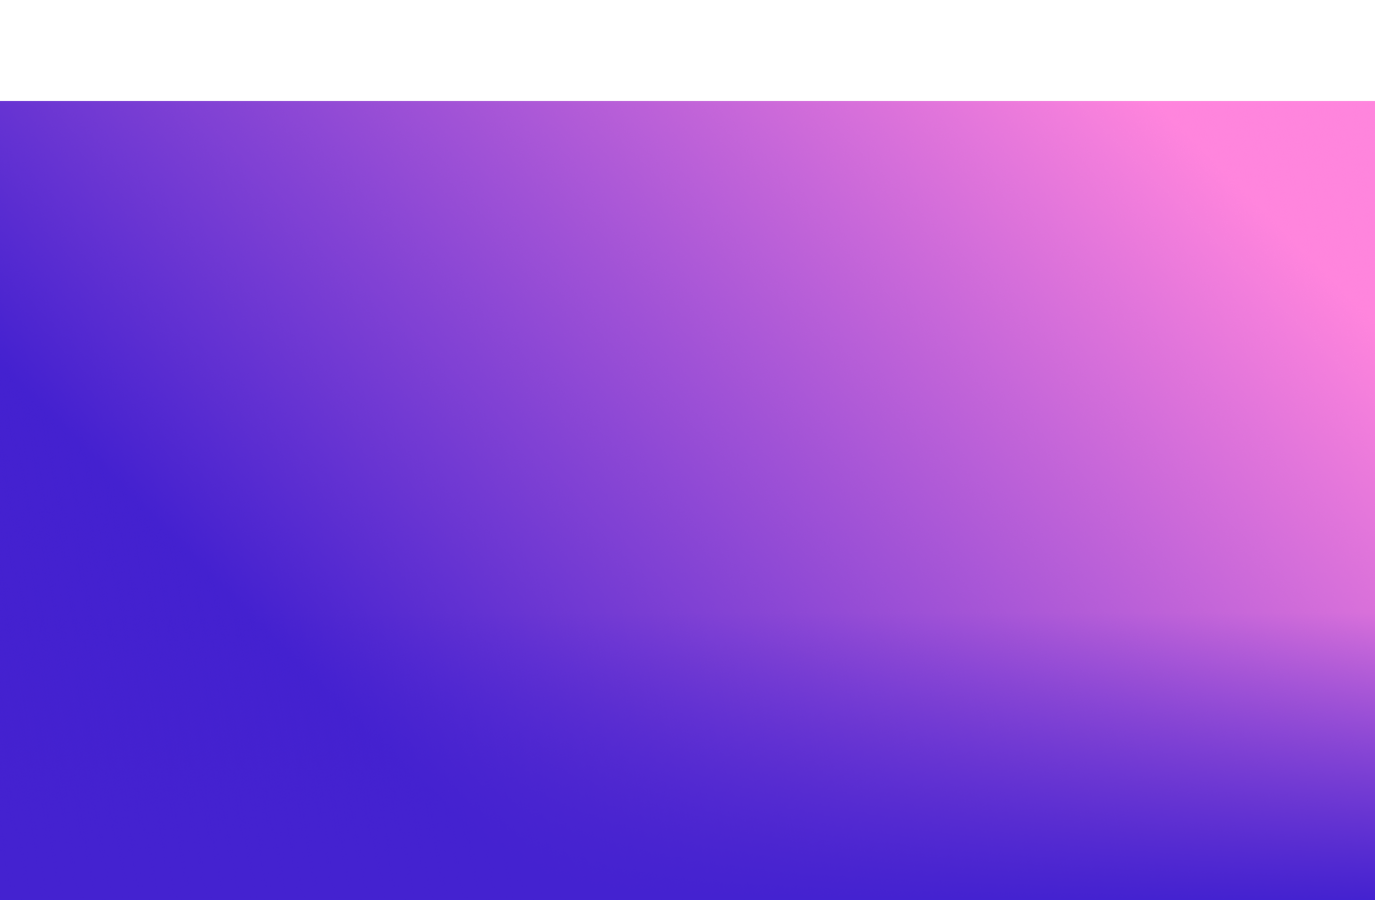 Rosa bis violetter Farbverlauf